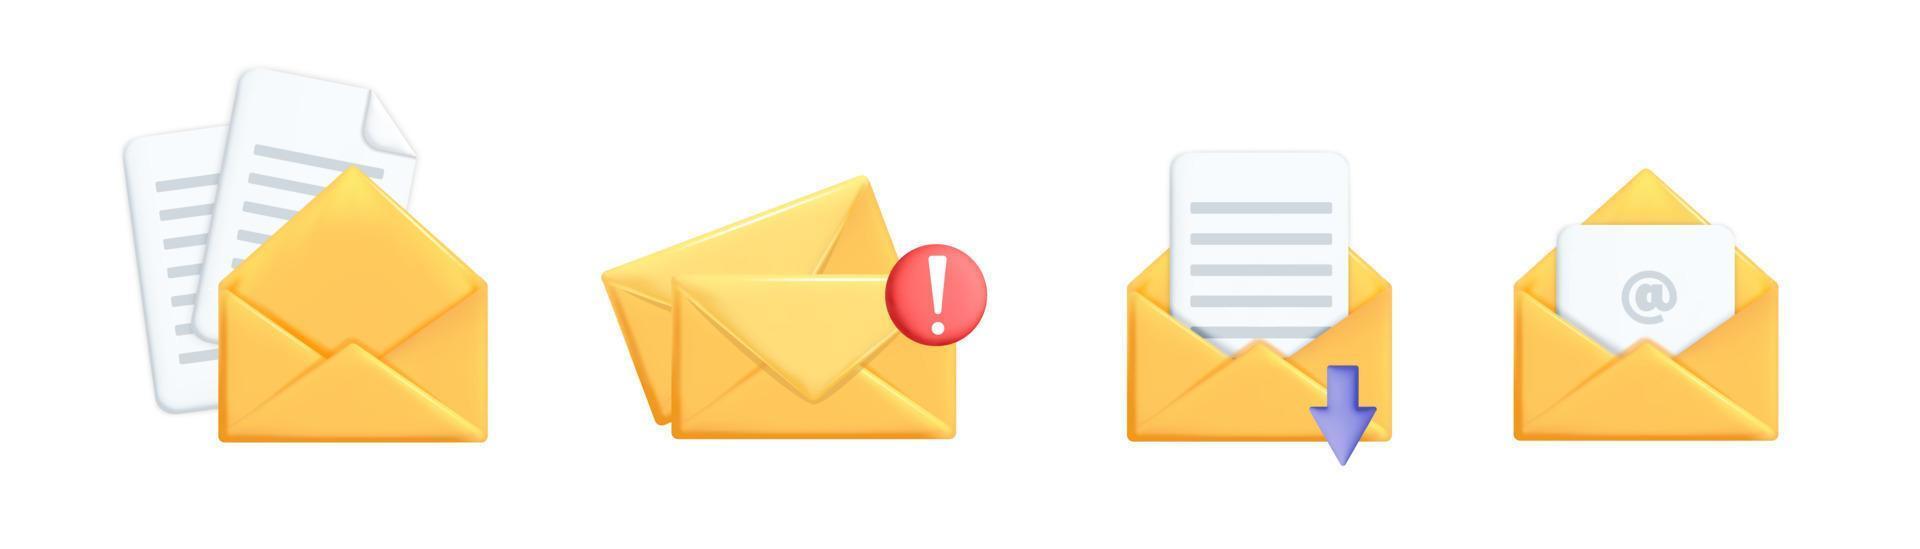 Ensemble de vecteurs réalistes 3d de conception d'icônes d'enveloppe de courrier électronique jaune vecteur